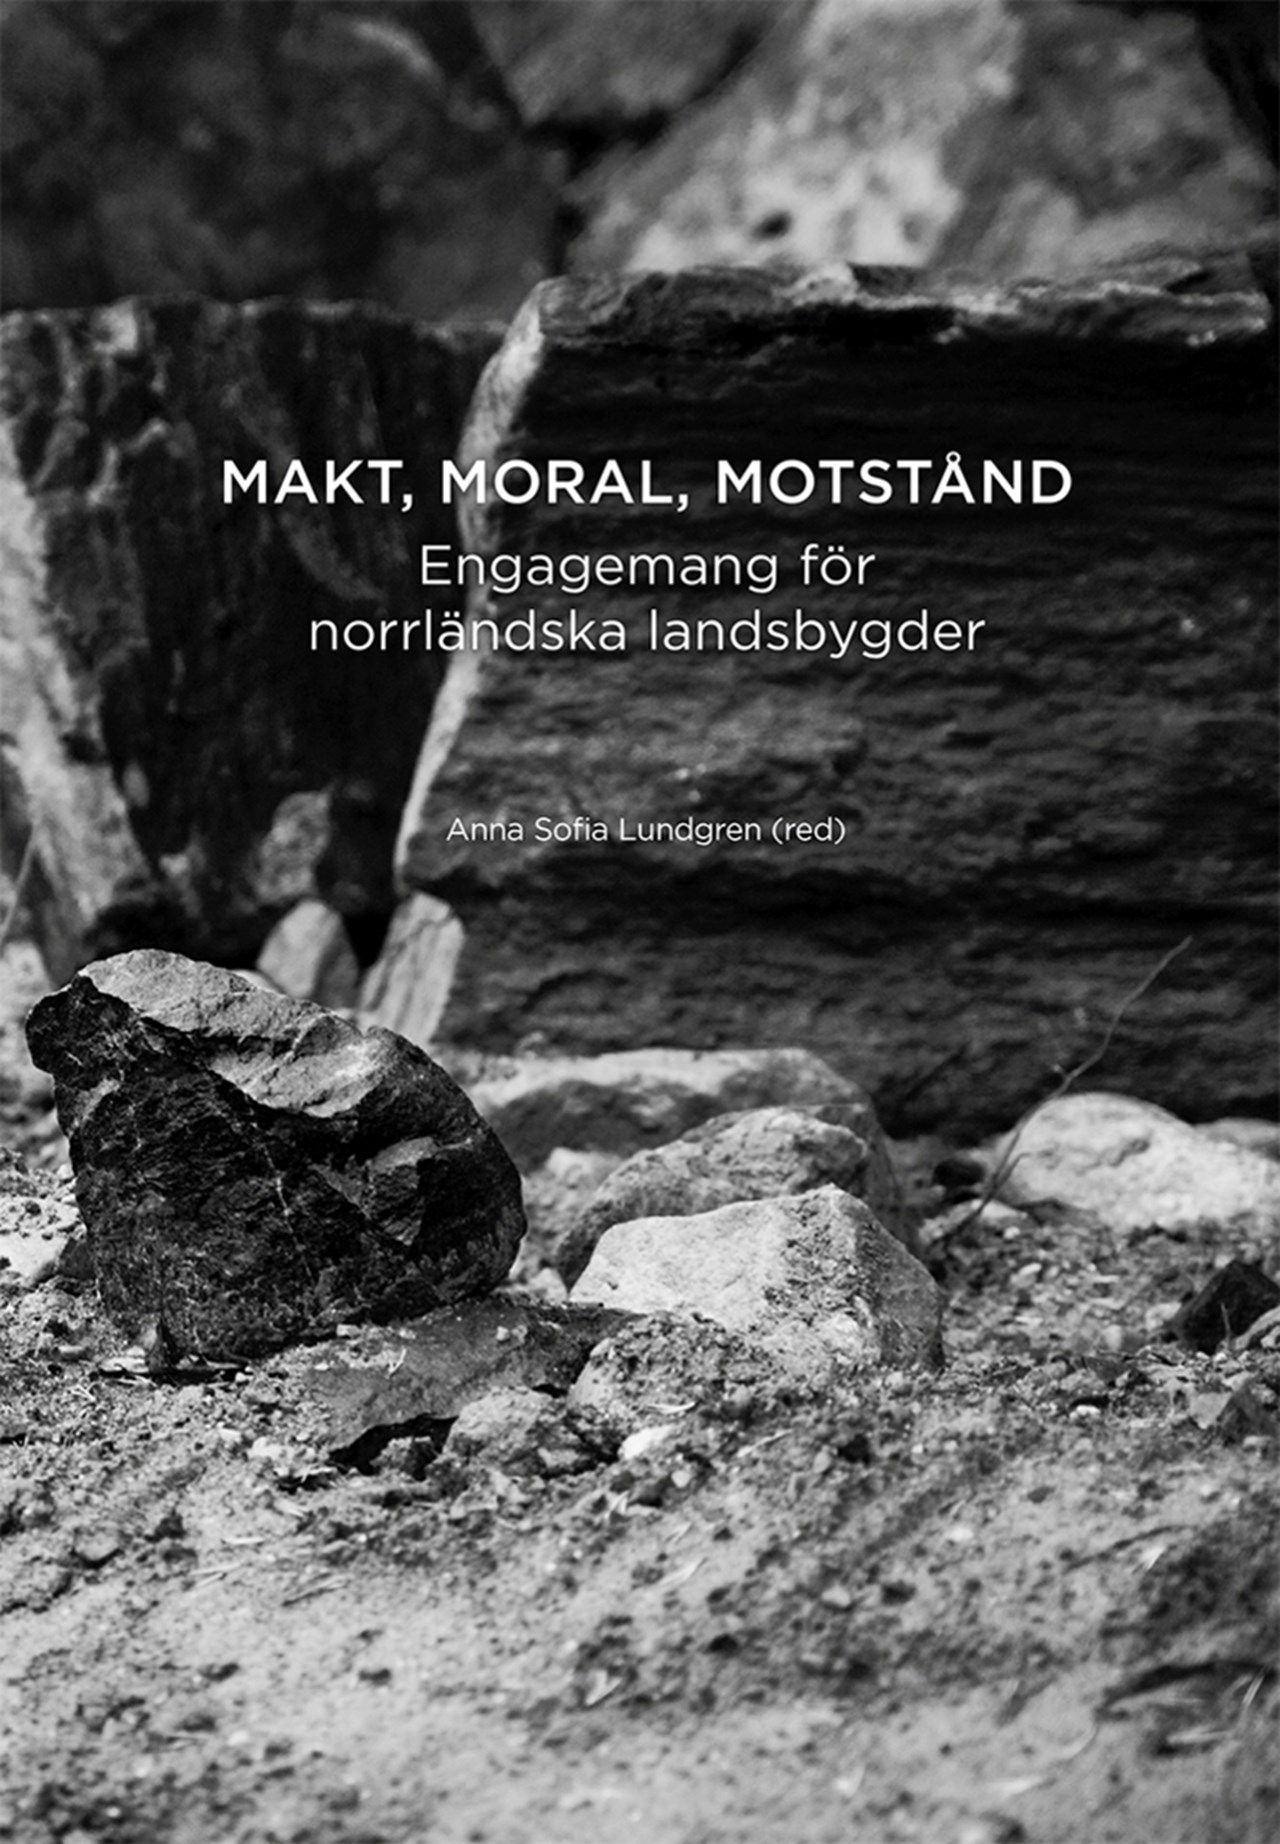 Bild föreställande omslaget till Makt, moral, motstånd: Engagemang för norrländska landsbygder